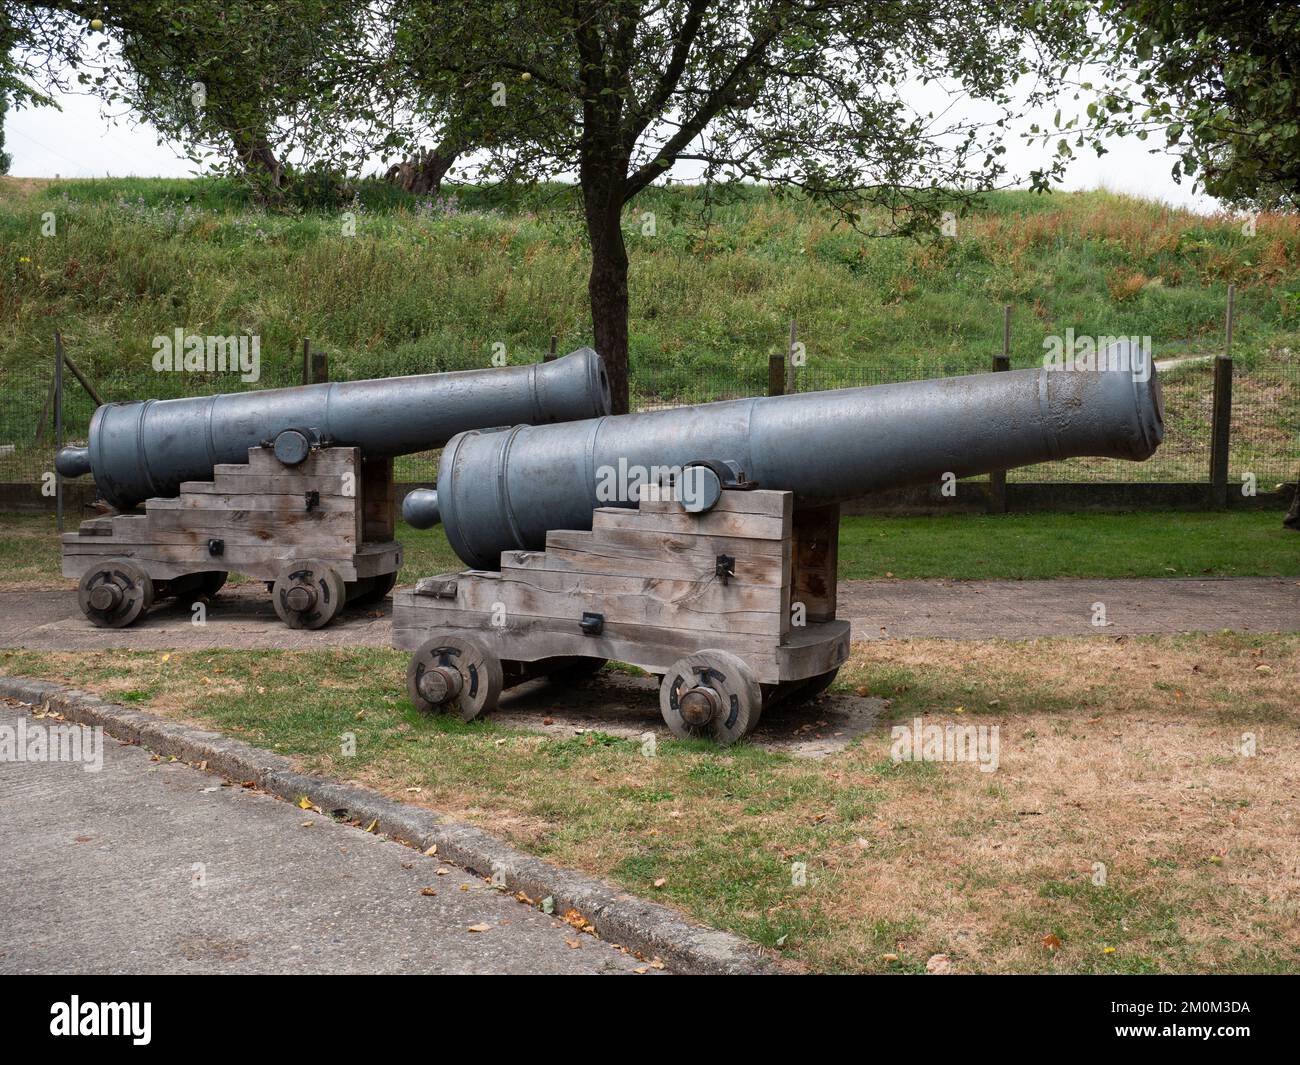 De vieux canons navals lourds sur une base en bois appelée chariot Banque D'Images